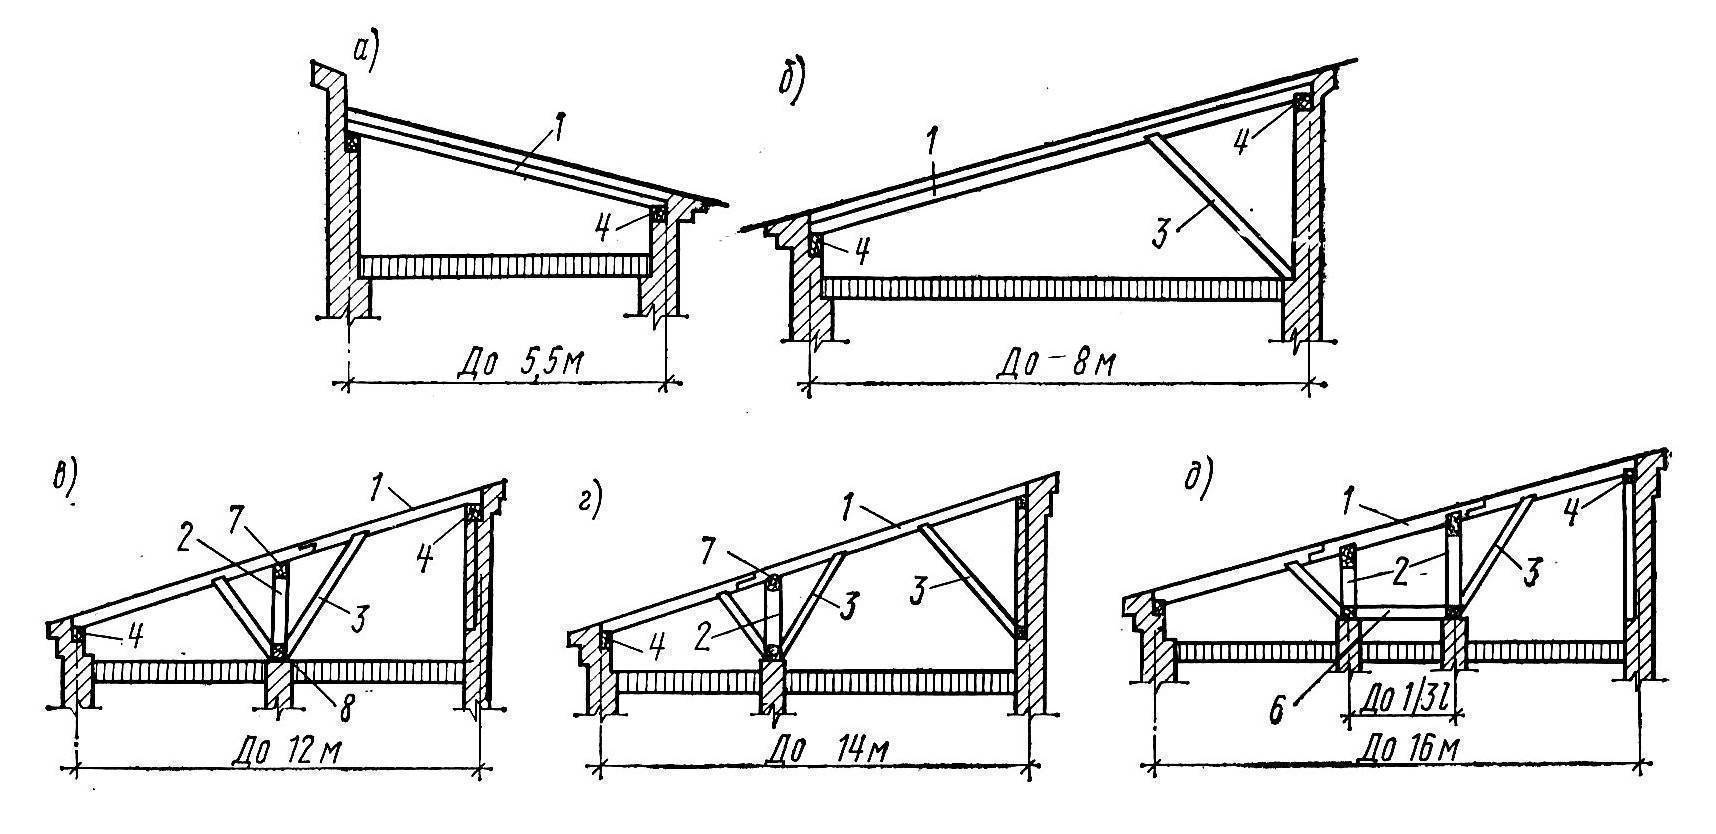 Двухскатная крыша дома своими руками, пошаговая инструкция – сборка и утановка стропил